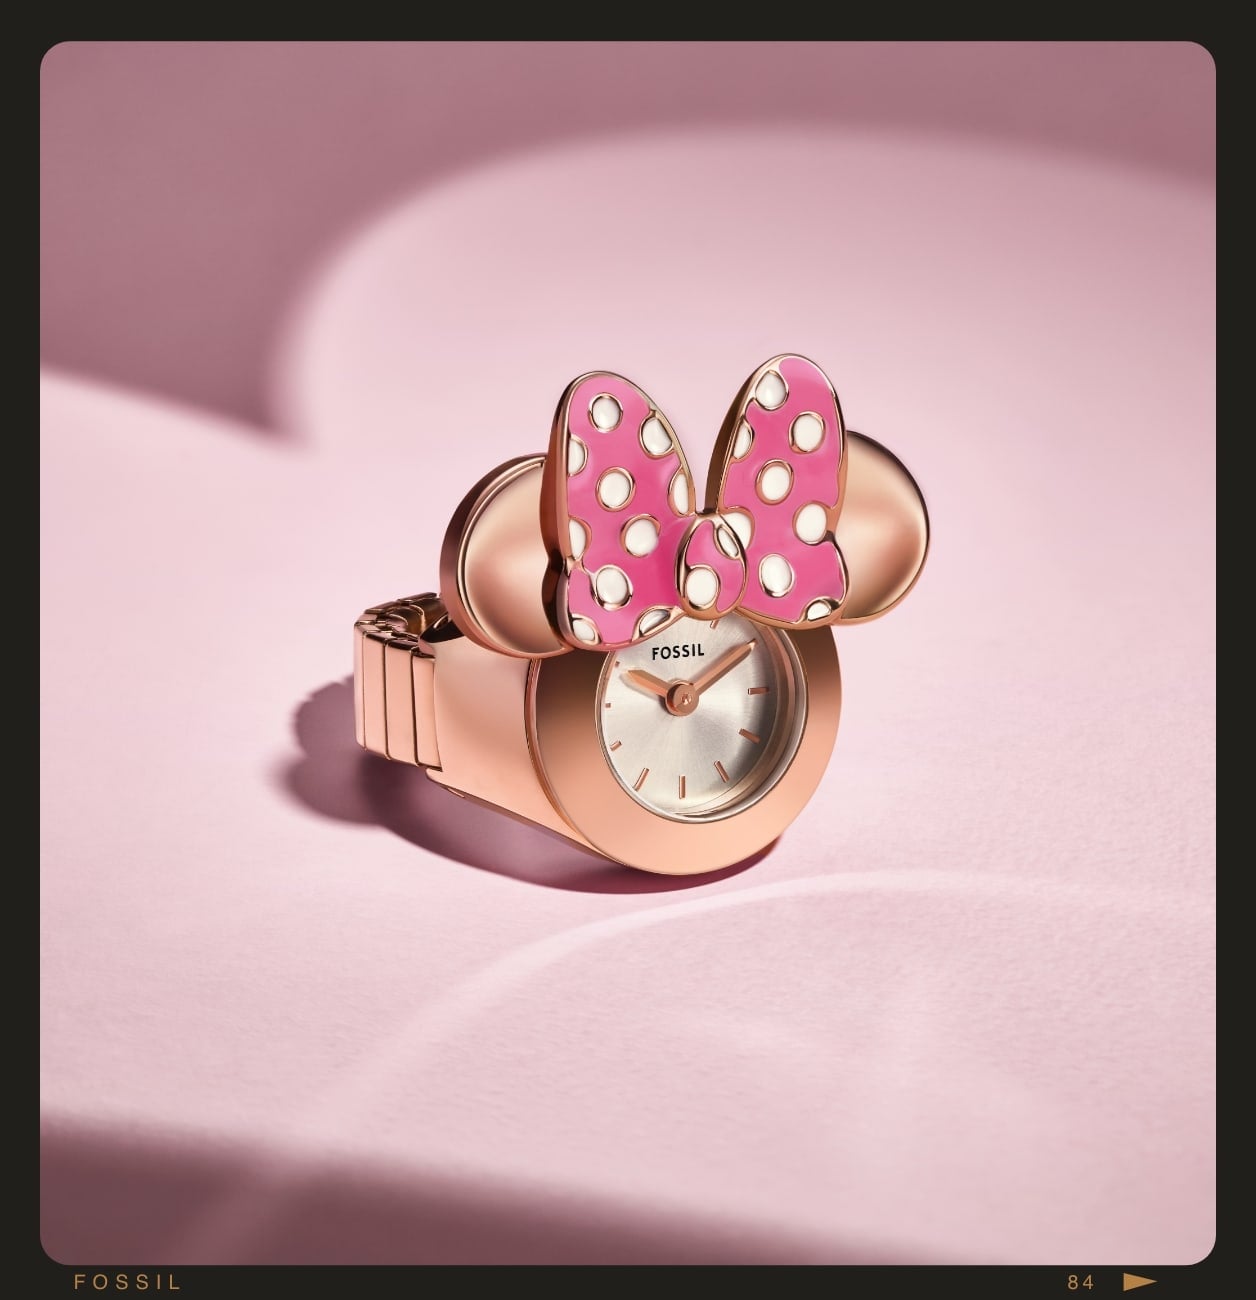 L’orologio ad anello Disney Minnie Mouse color oro rosa con le orecchie da Minnie e un fiocco a pois.